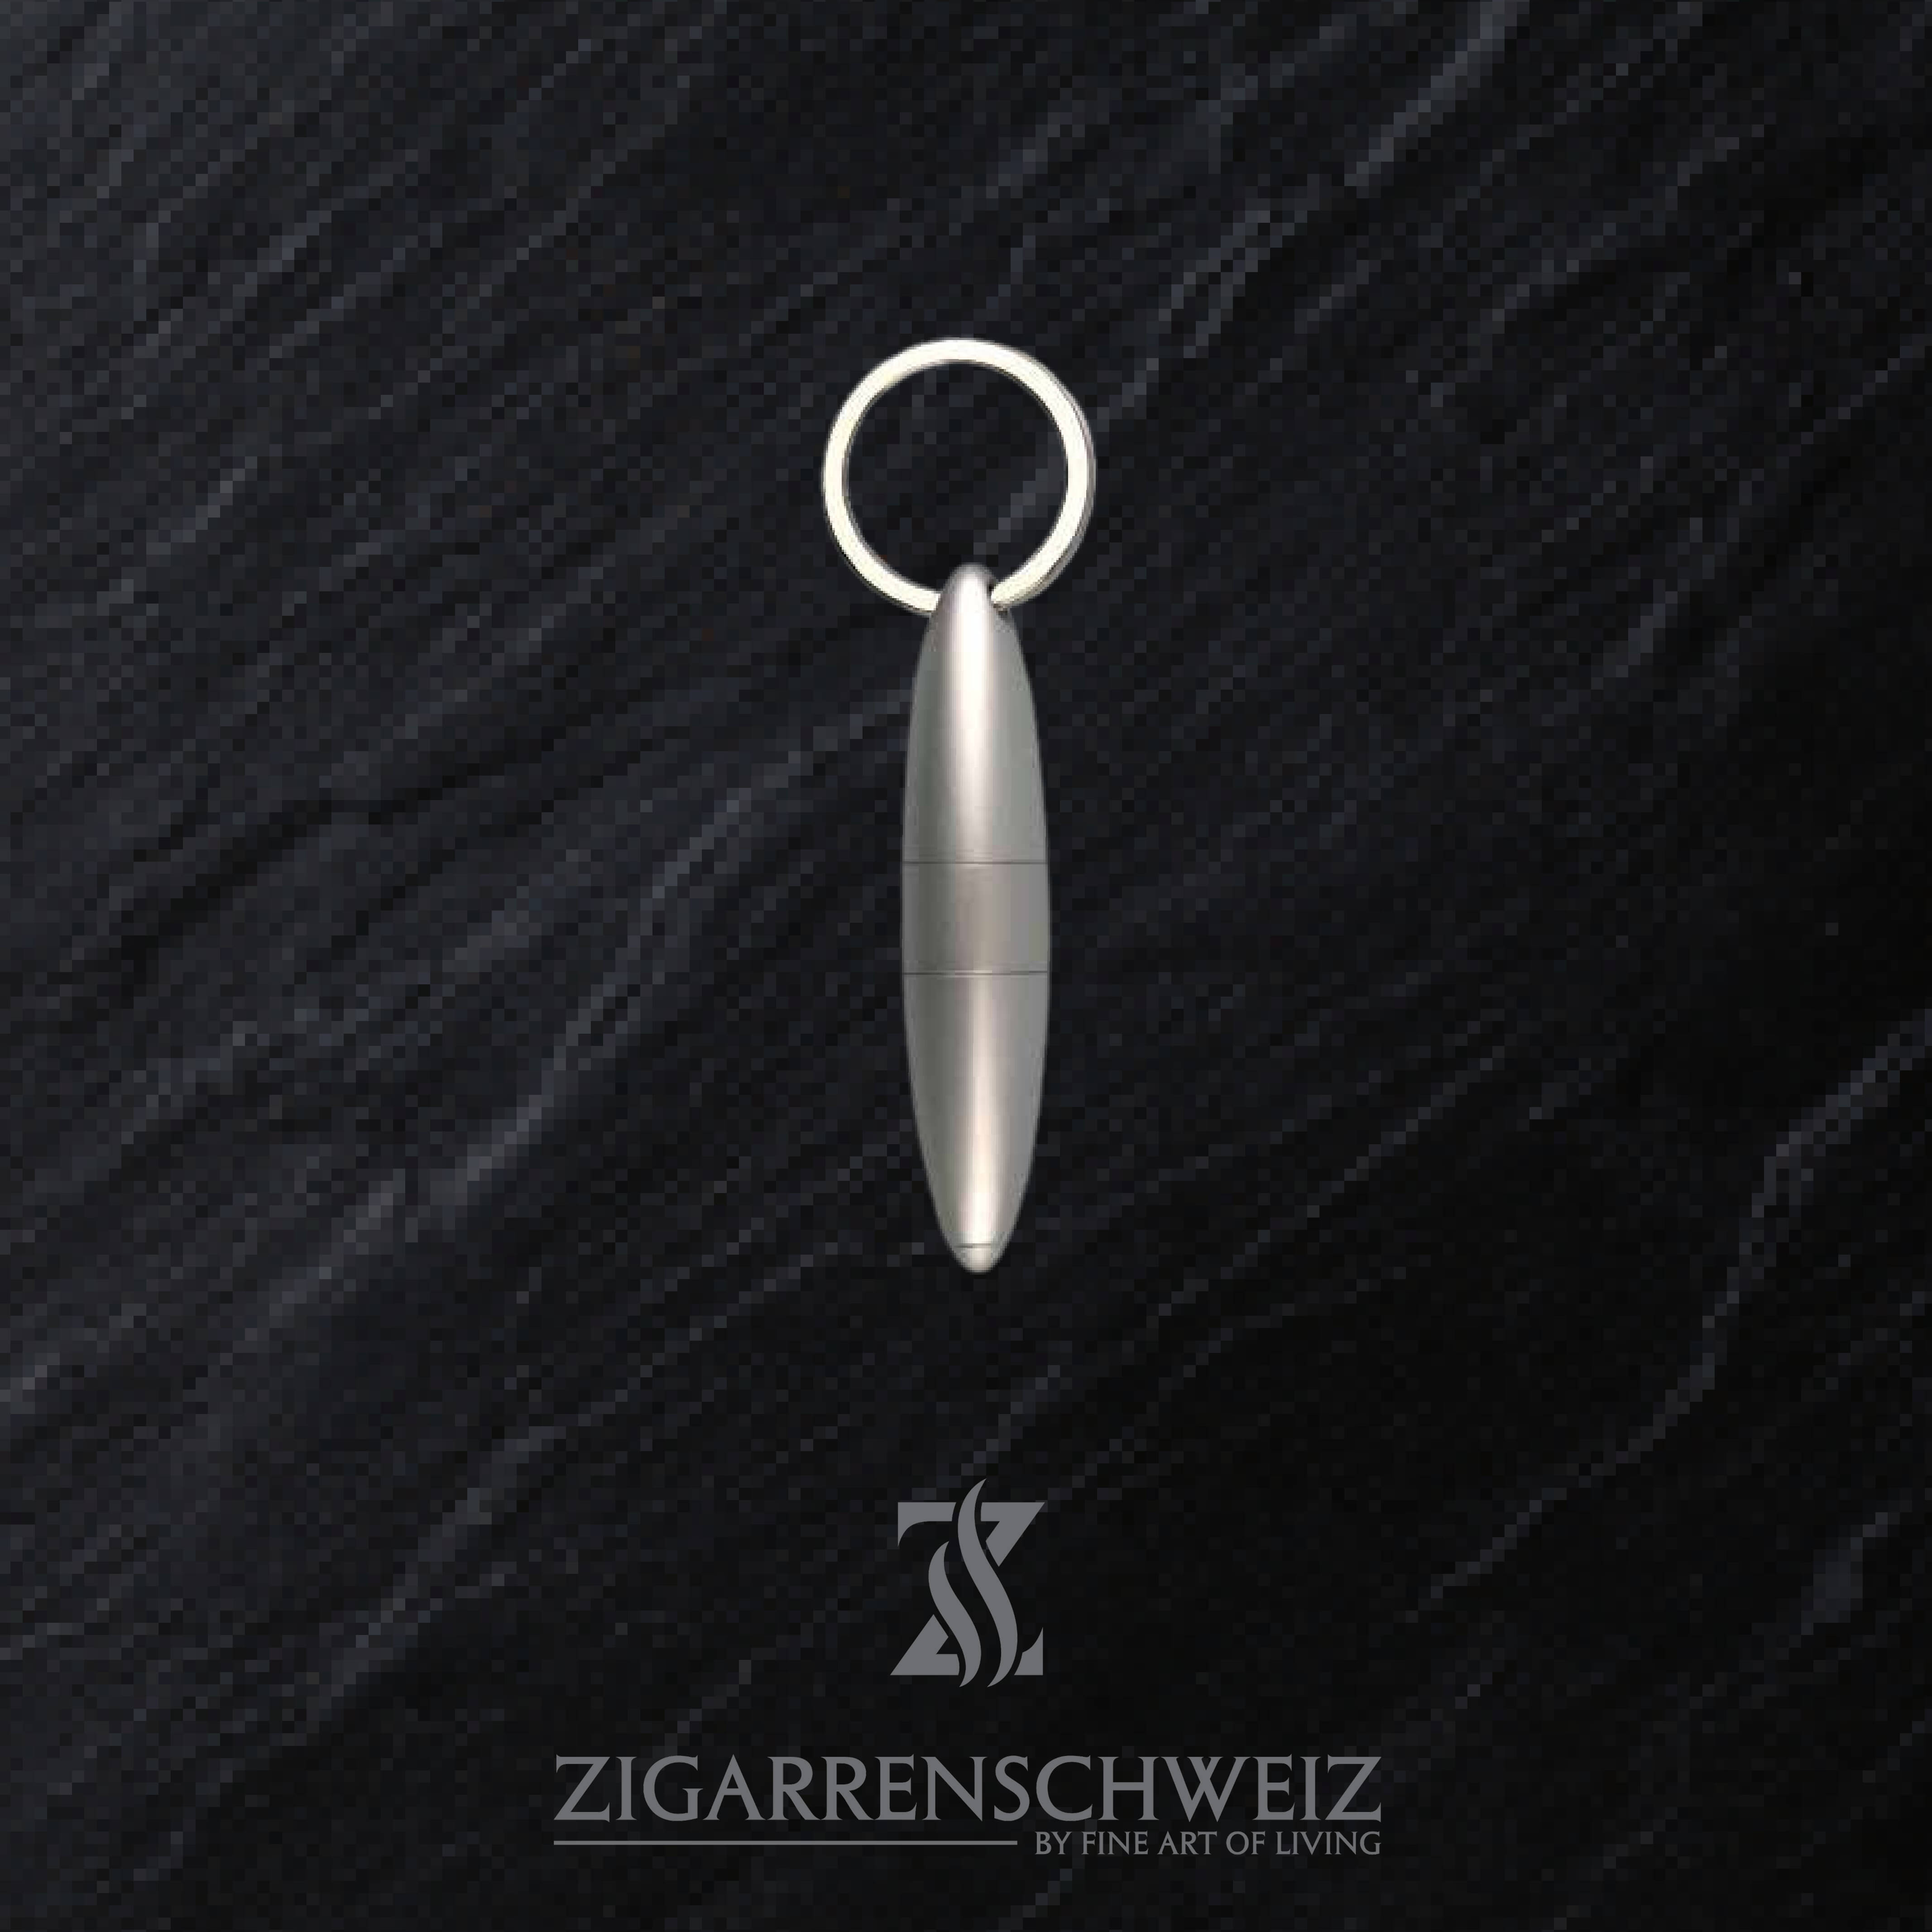 Passatore Zigarren Puncher und Zigarren Bohrer, praktischer Schlüsselanhänger, zwei in eins, Farbe: Silber gebürstet